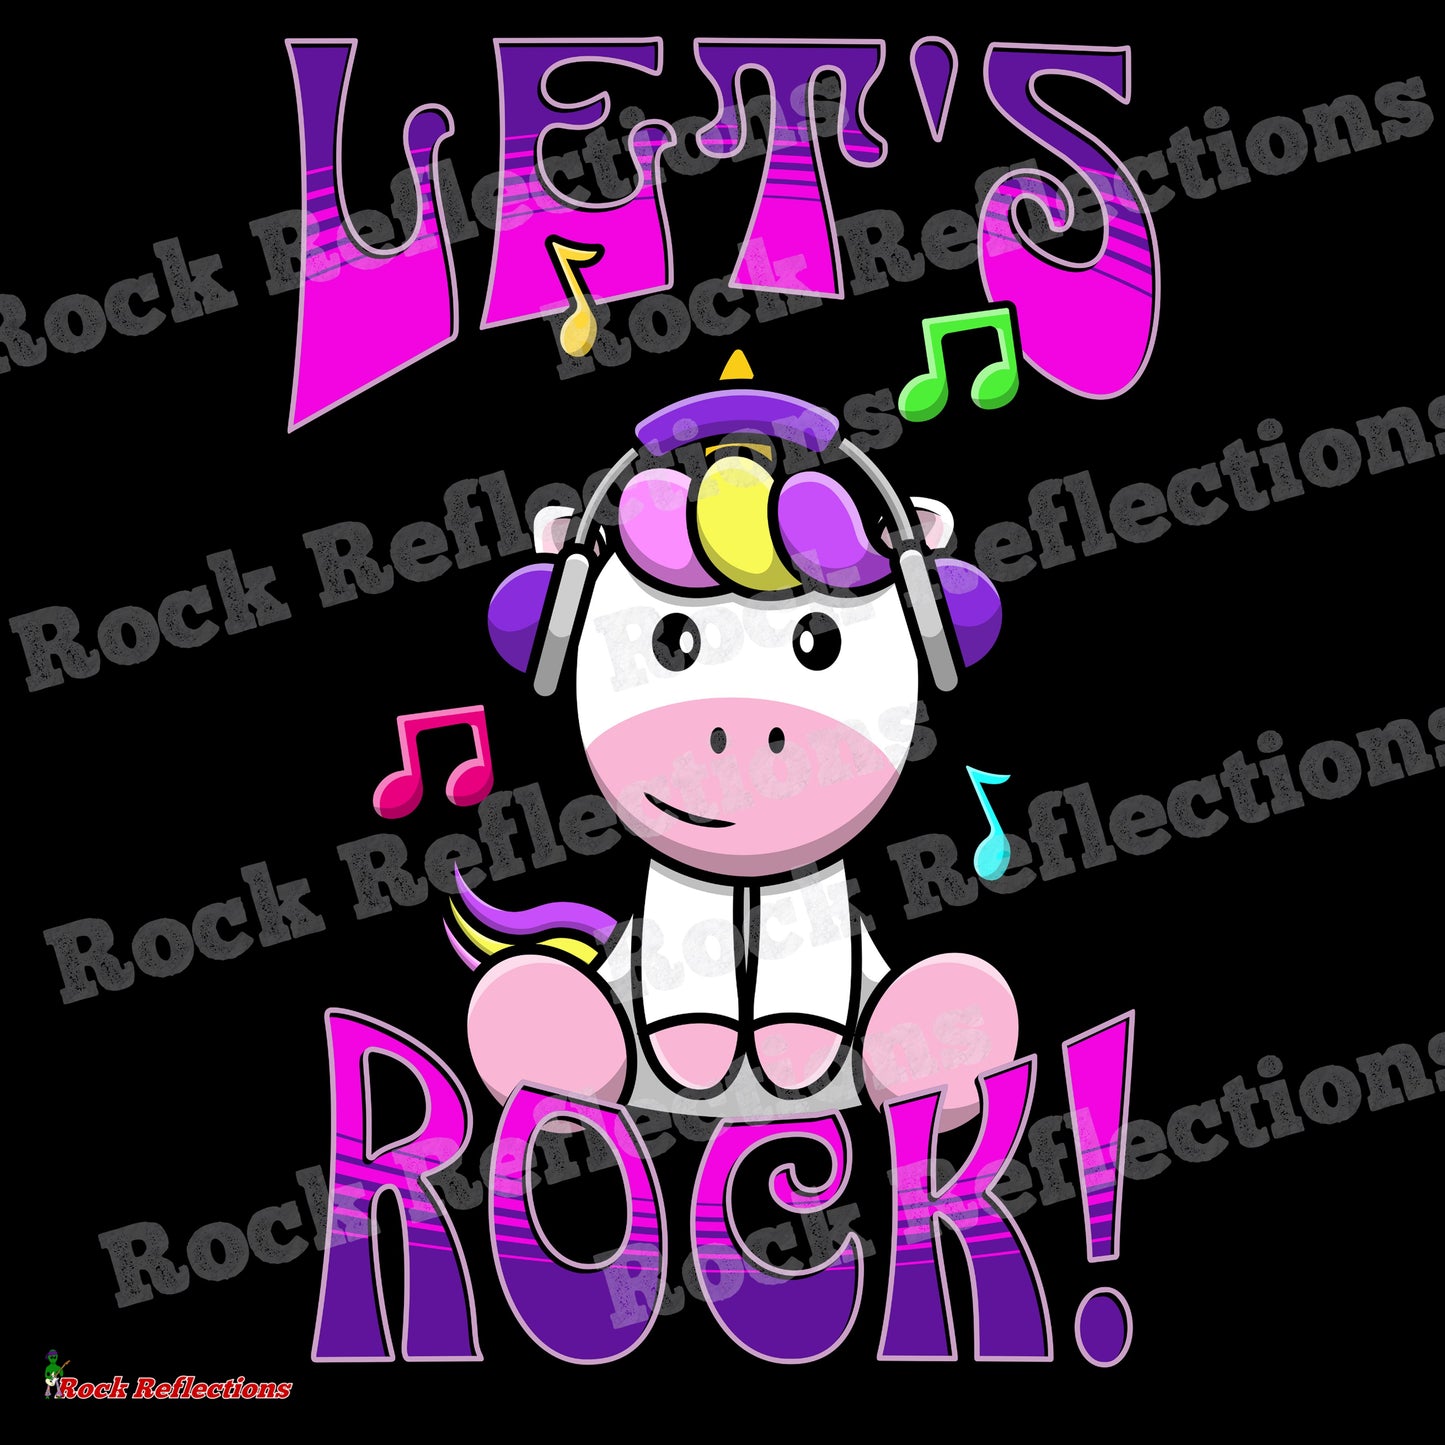 Let's Rock Unicorn - Purple SPOD